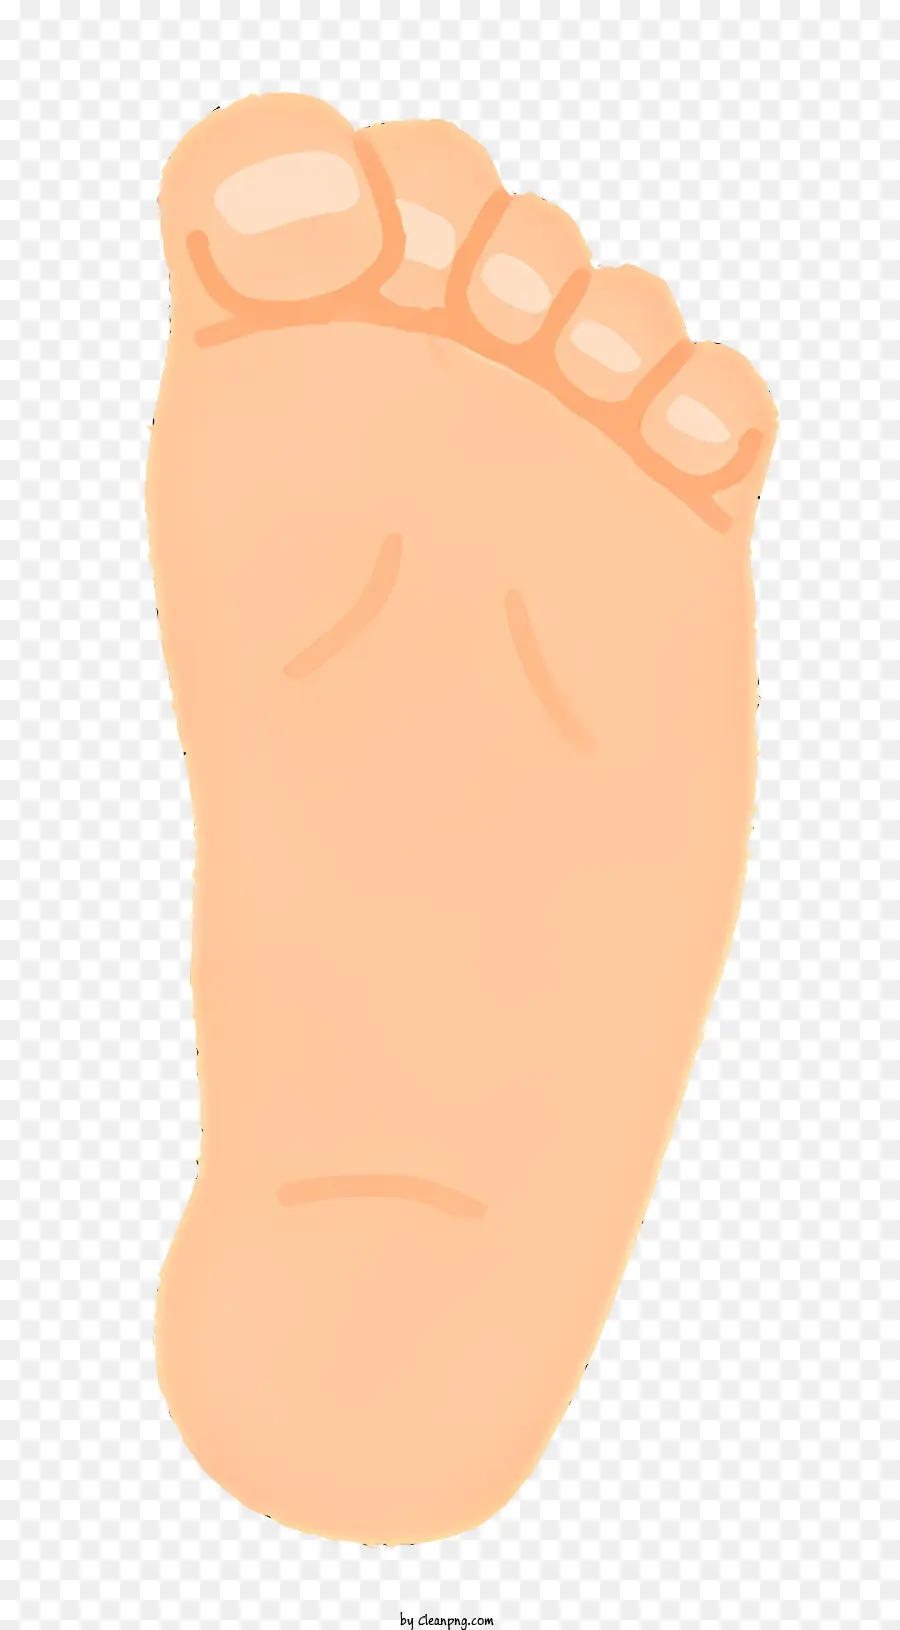 punta del piede di salute verso l'alto verso l'alto - Immagine arancione del piede nudo di Toddler, punta in piedi